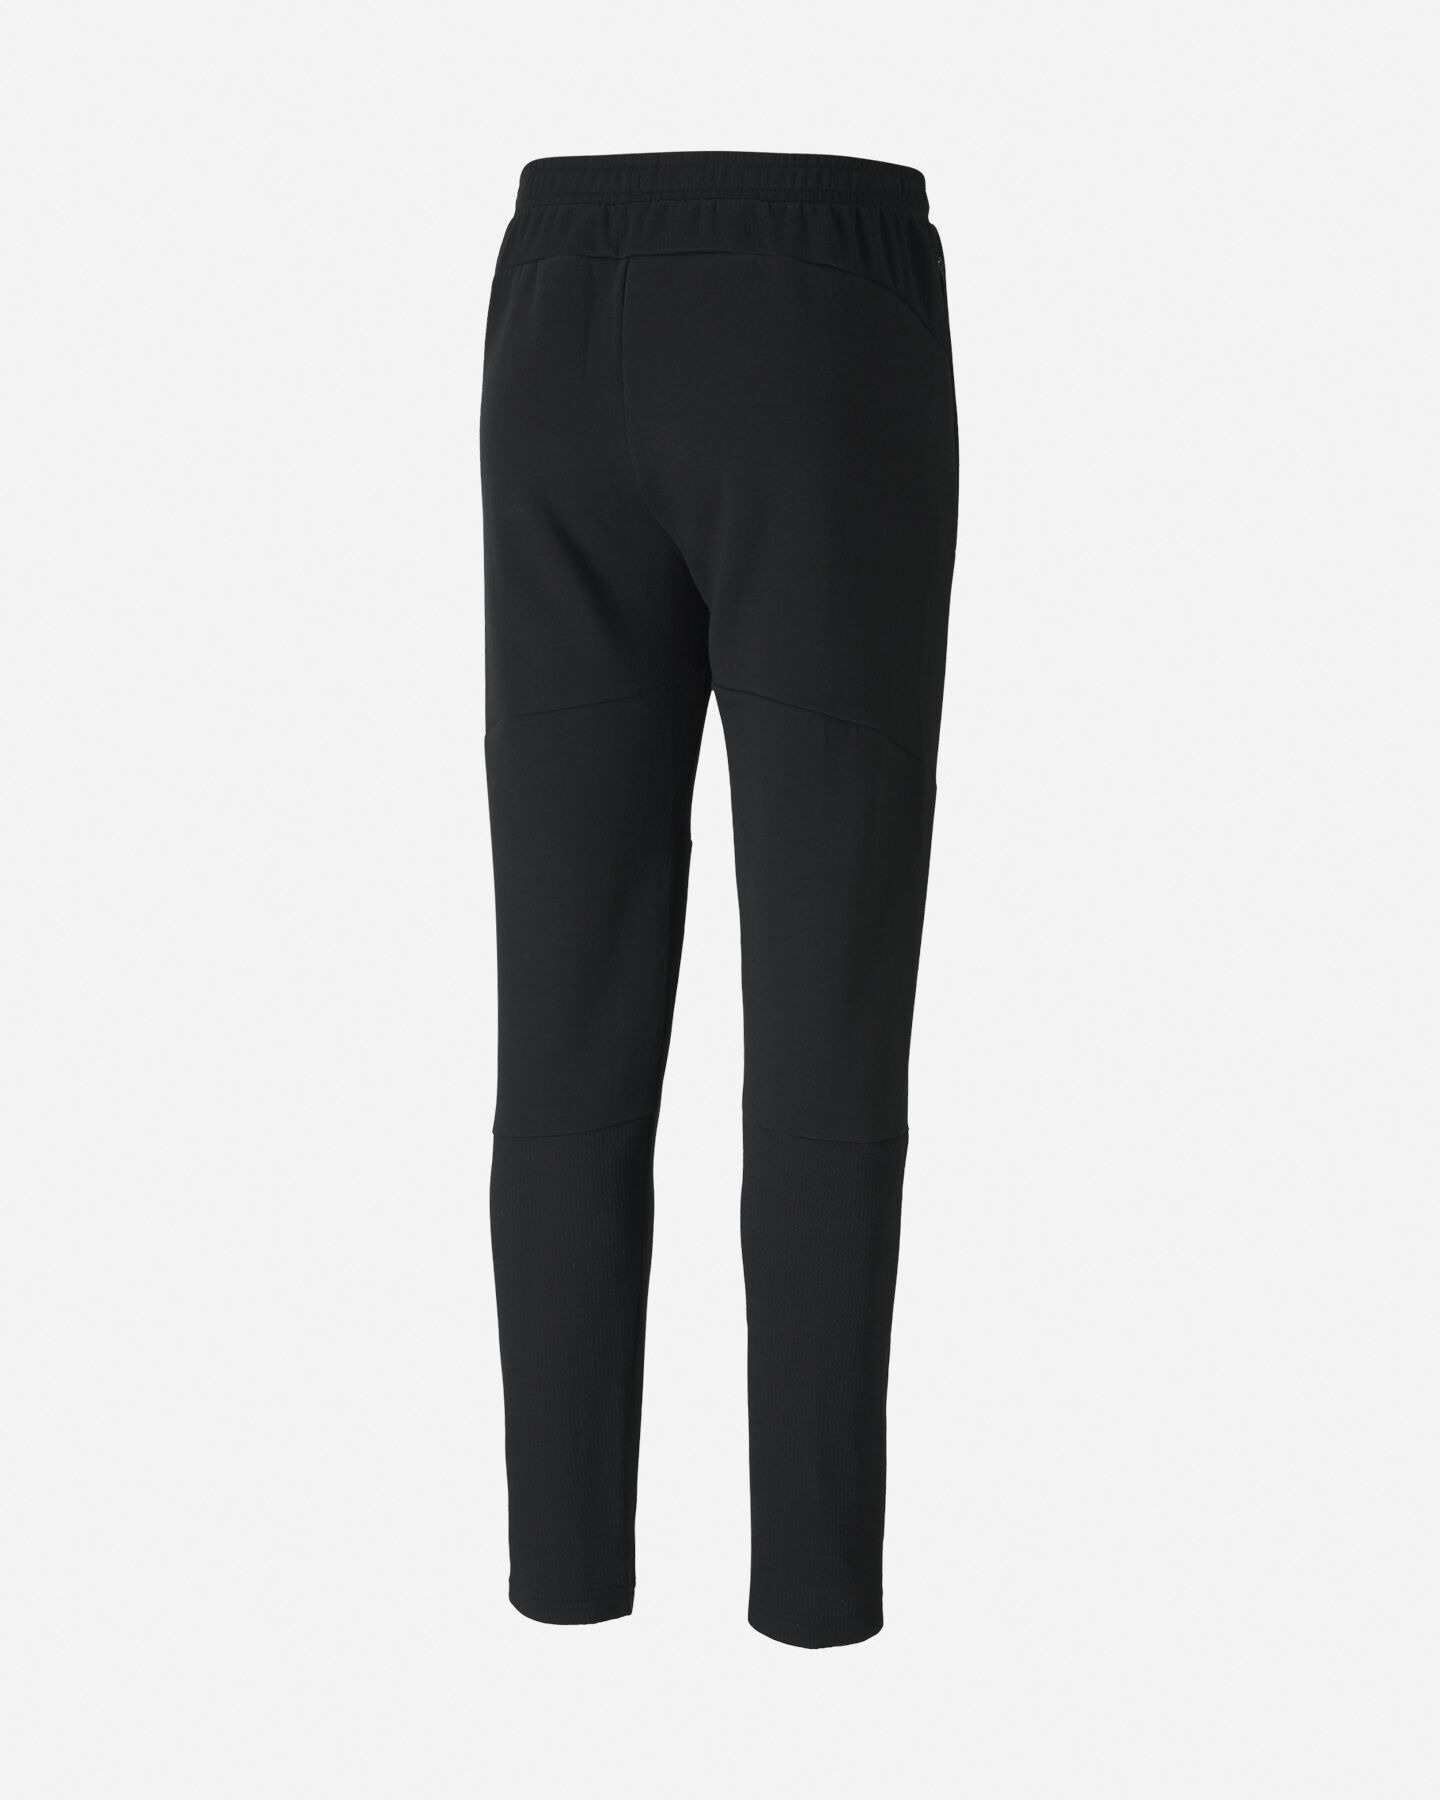  Pantalone PUMA EVOSTRIPE FNG M S5235103|01|XS scatto 1